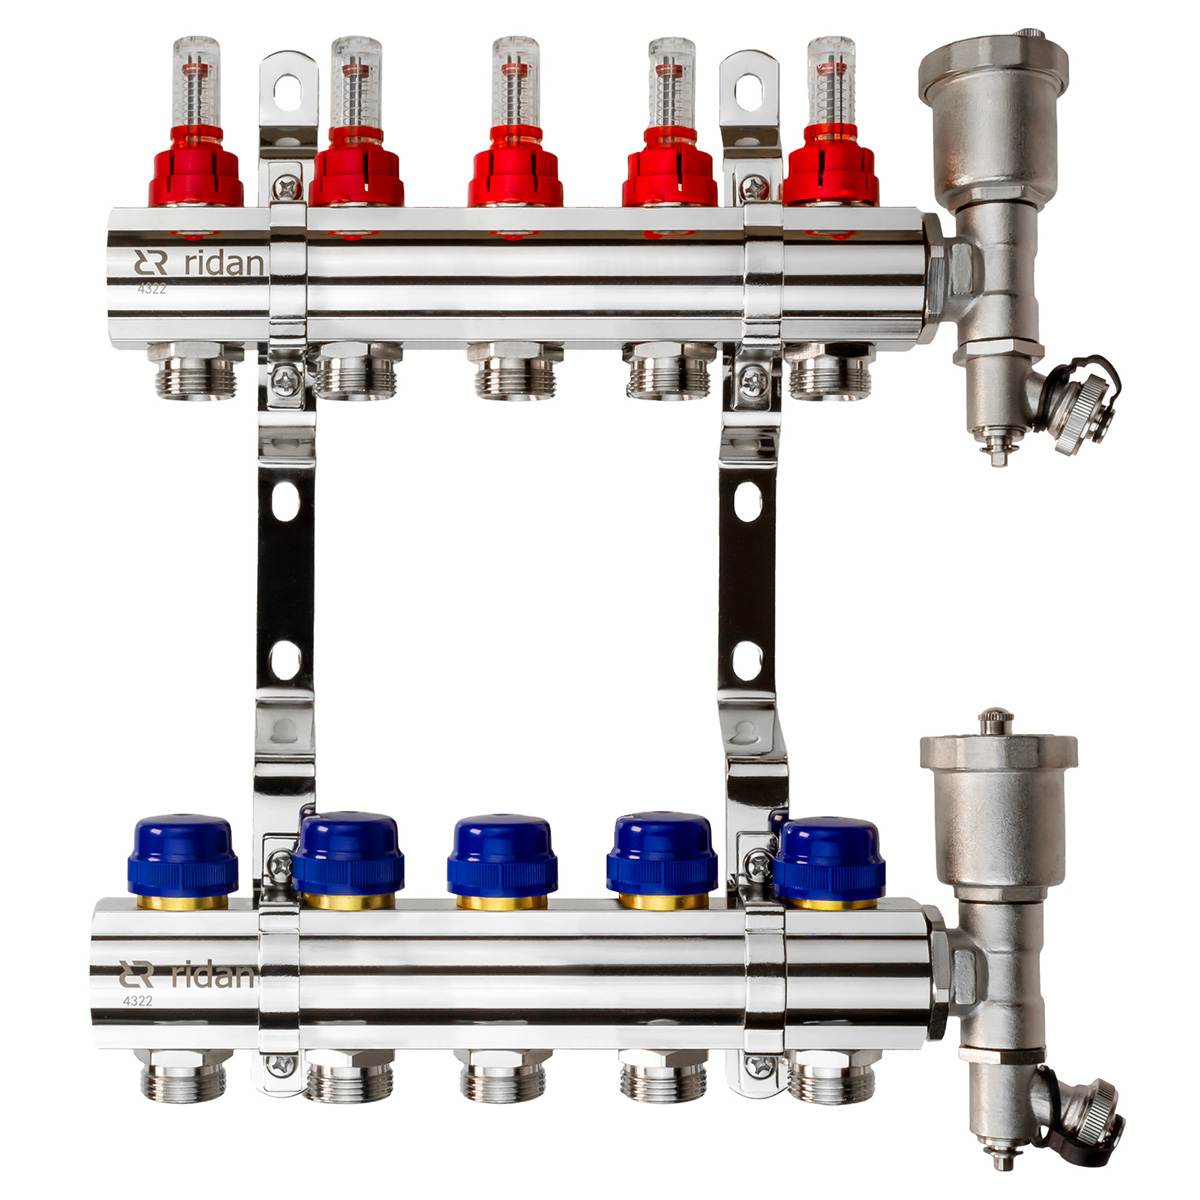 Комплект коллекторов Ридан FHF-5RF set с расходомерами, 5 контура комплект присоединения valteс 1 2 для счётчиков воды